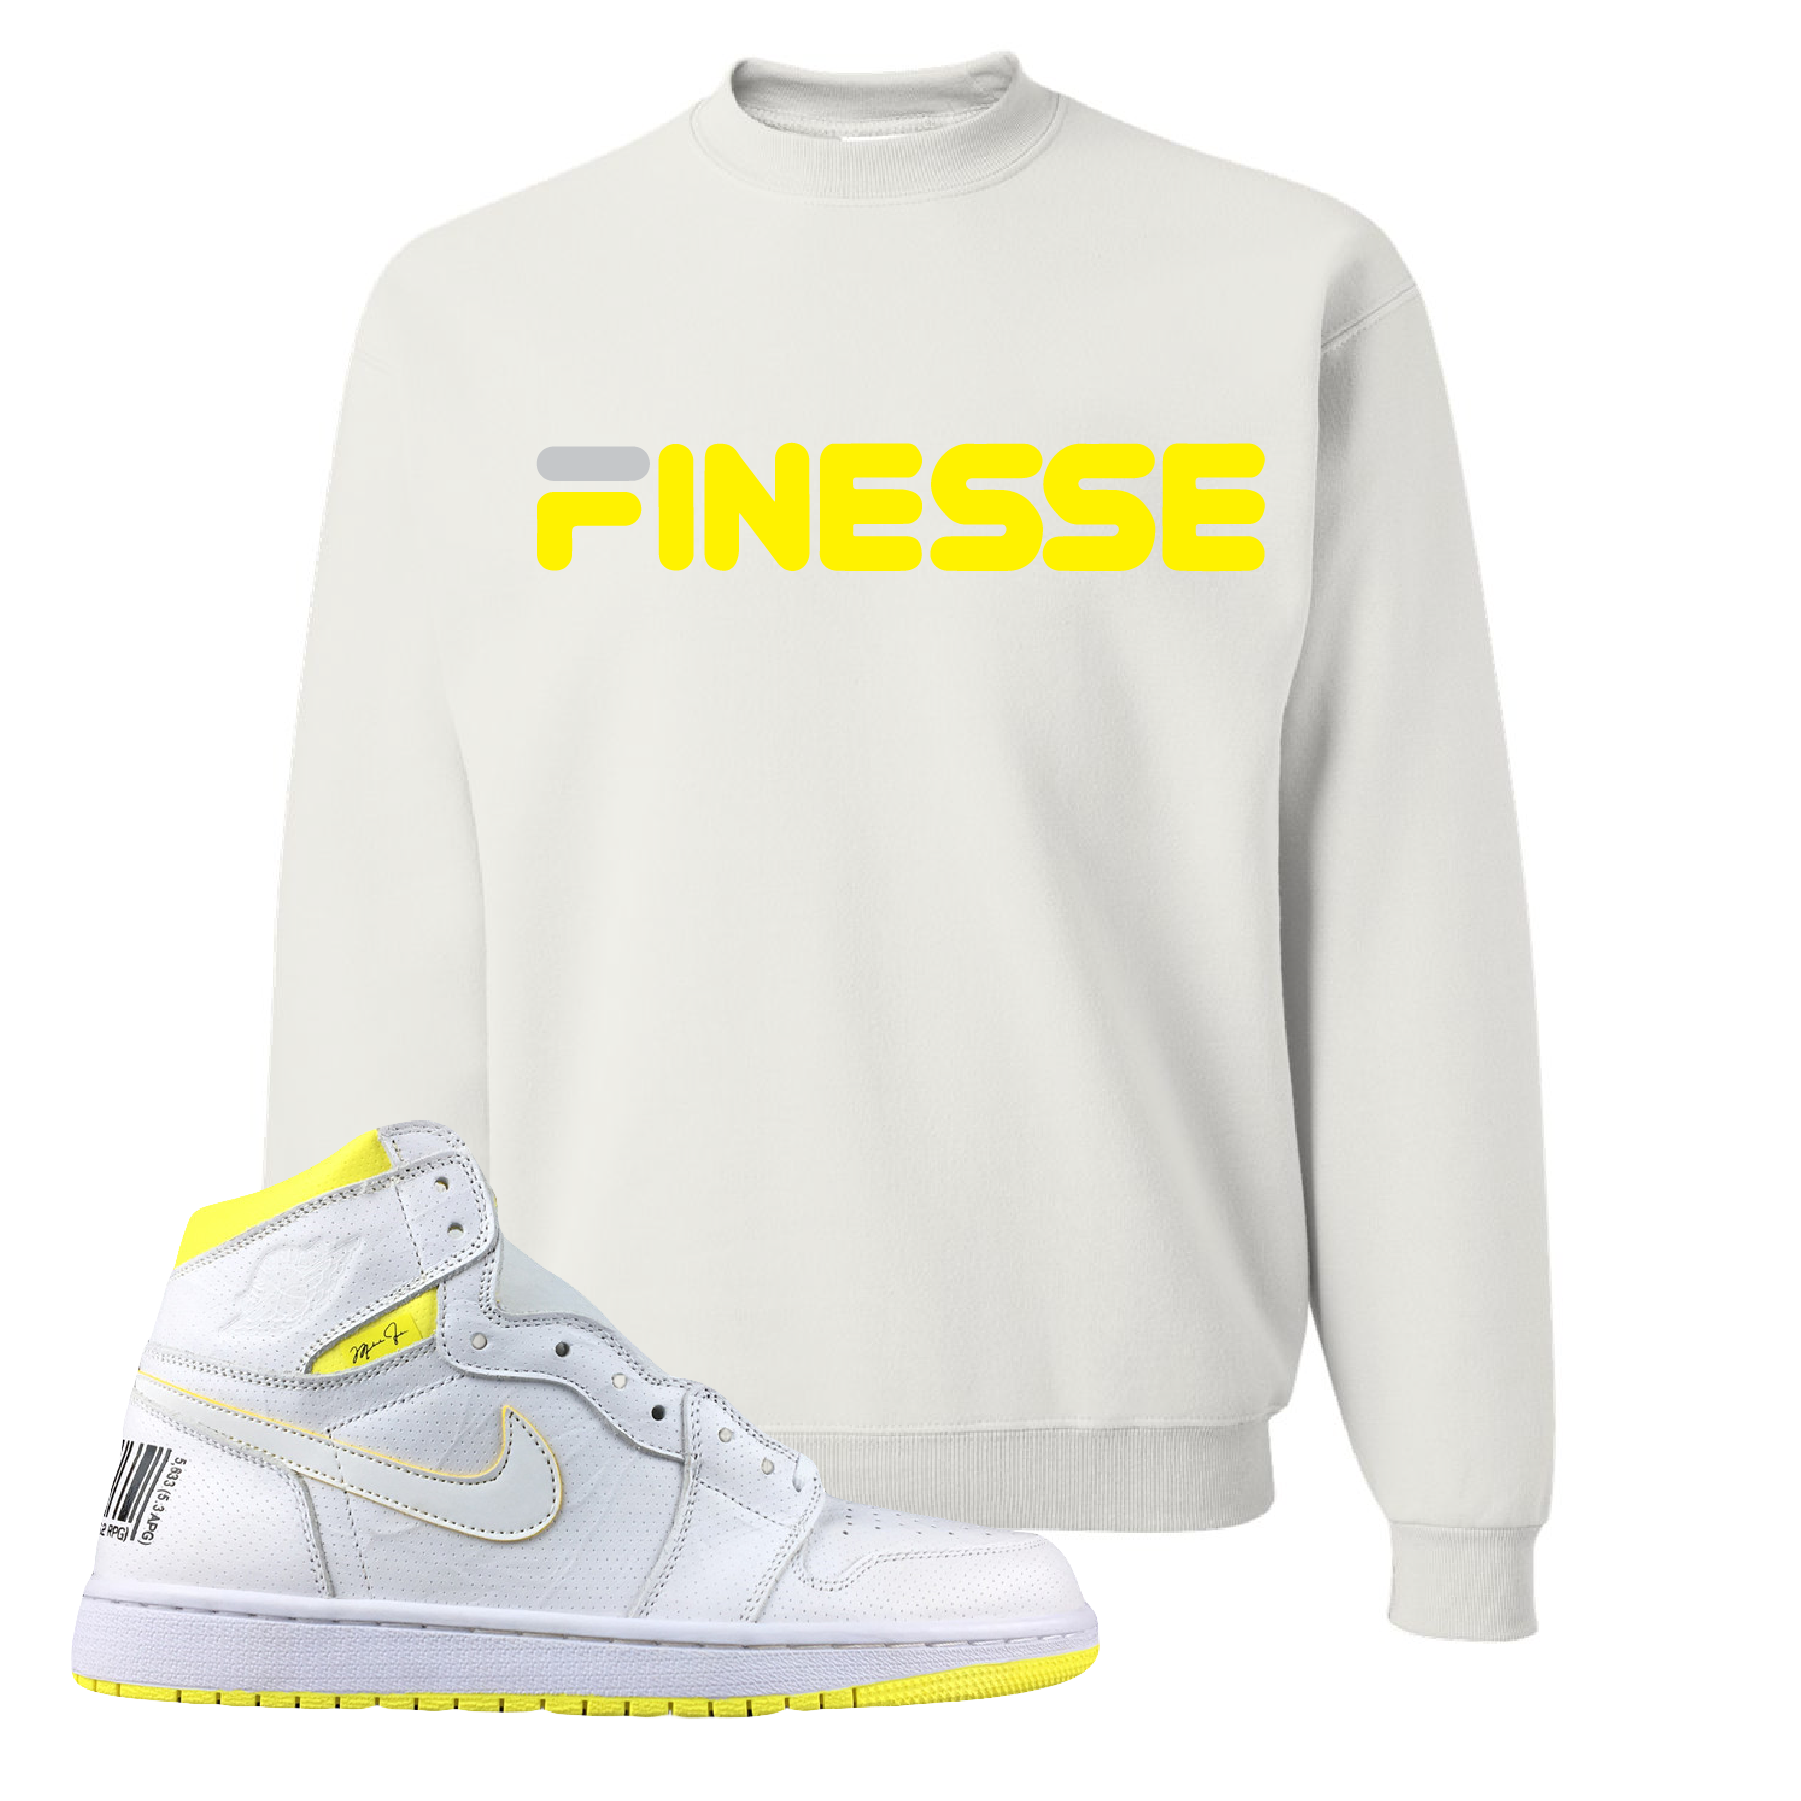 Jordan 1 First Class Flight Finesse Sneaker Matching White Crewneck Sweatshirt